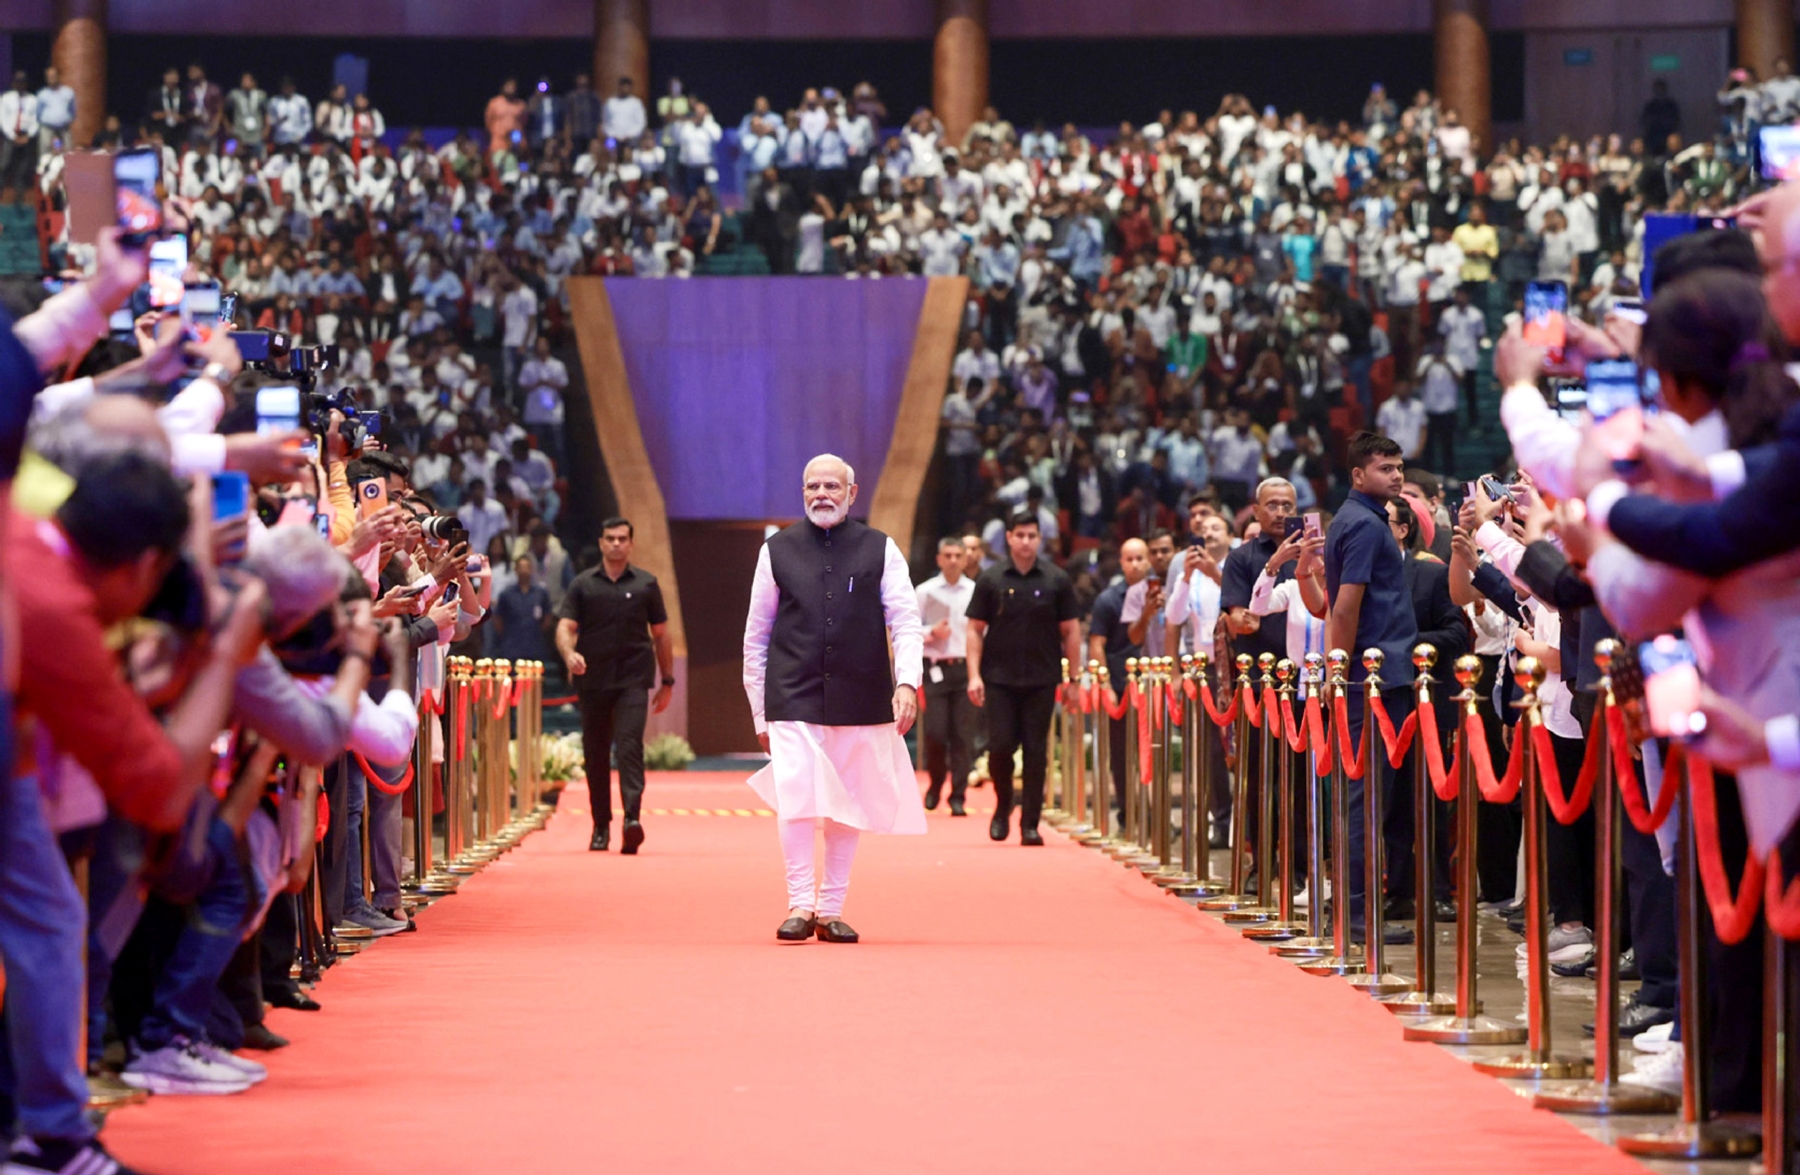 प्रधानमंत्री नरेंद्र मोदी ने प्रगति मैदान के भारत मंडपम में इंडिया मोबाइल कांग्रेस (आईएमसी) के 7वें संस्करण का उद्घाटन करने के बाद प्रदर्शनी का दौरा करते हुए। 